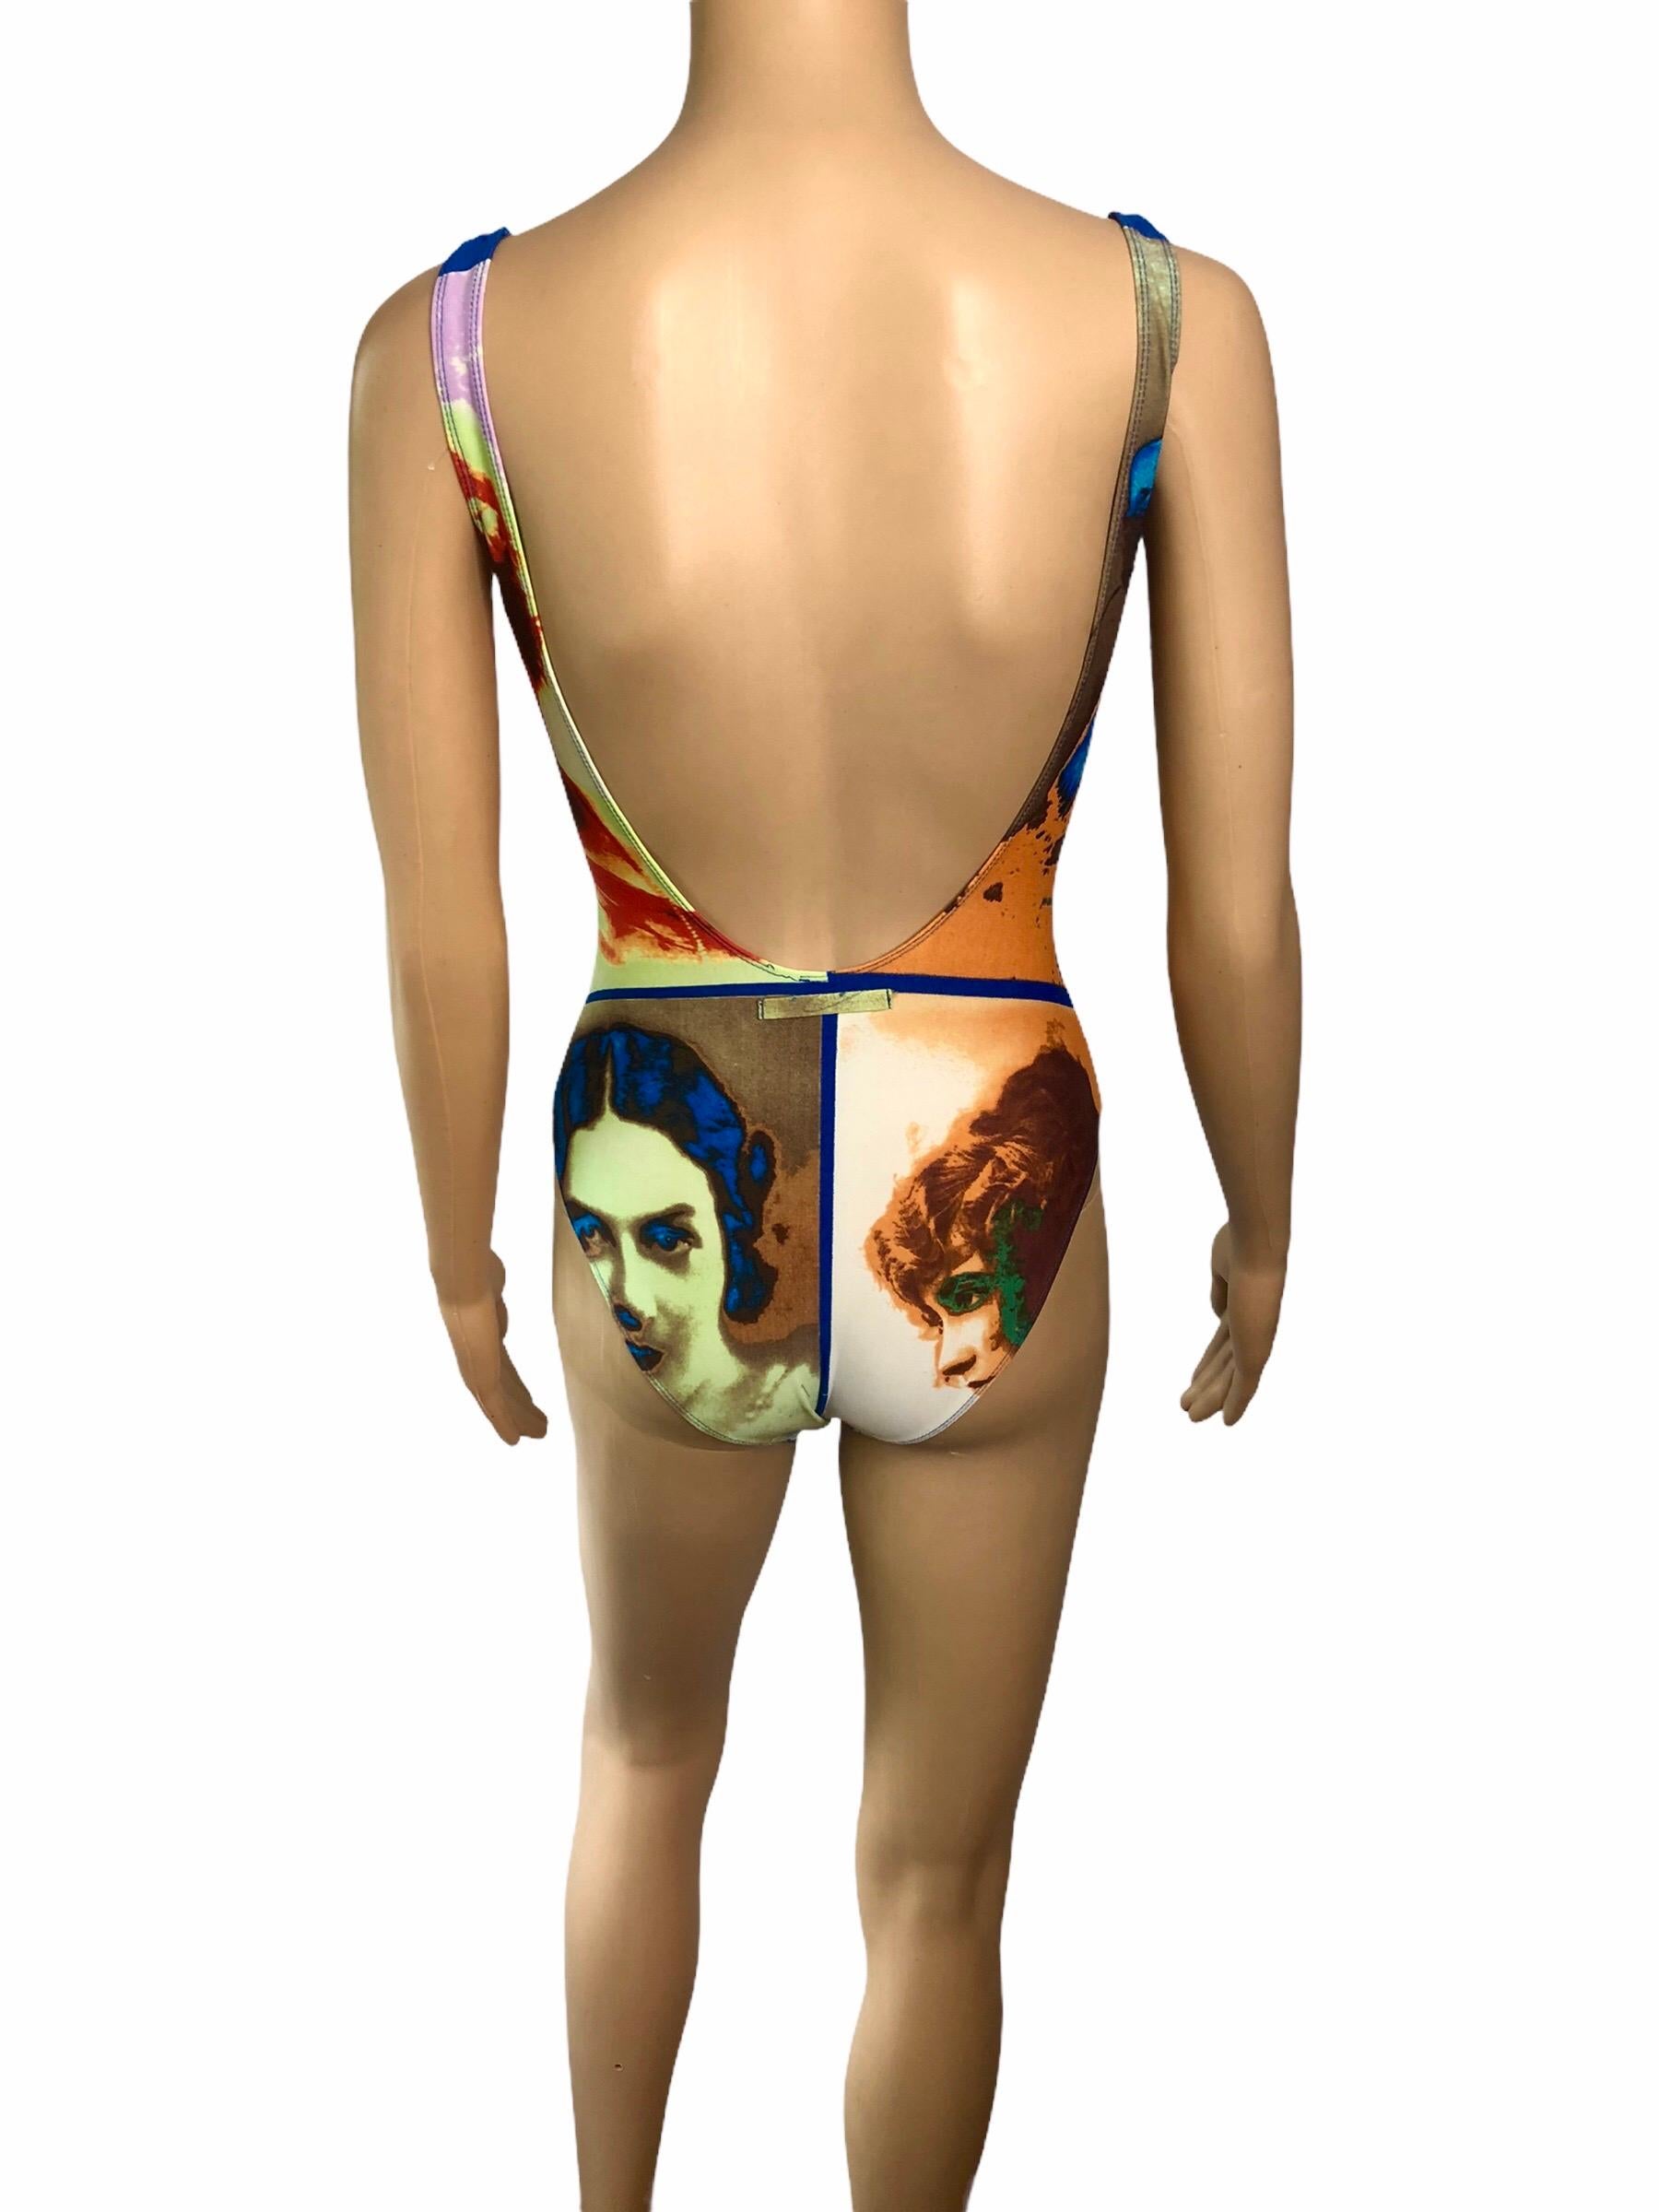 Jean Paul Gaultier Soleil S/S 2002 Vintage “Portraits” Print Open Back Bodysuit One- Piece Swimwear Swimsuit 
Size IT 42

